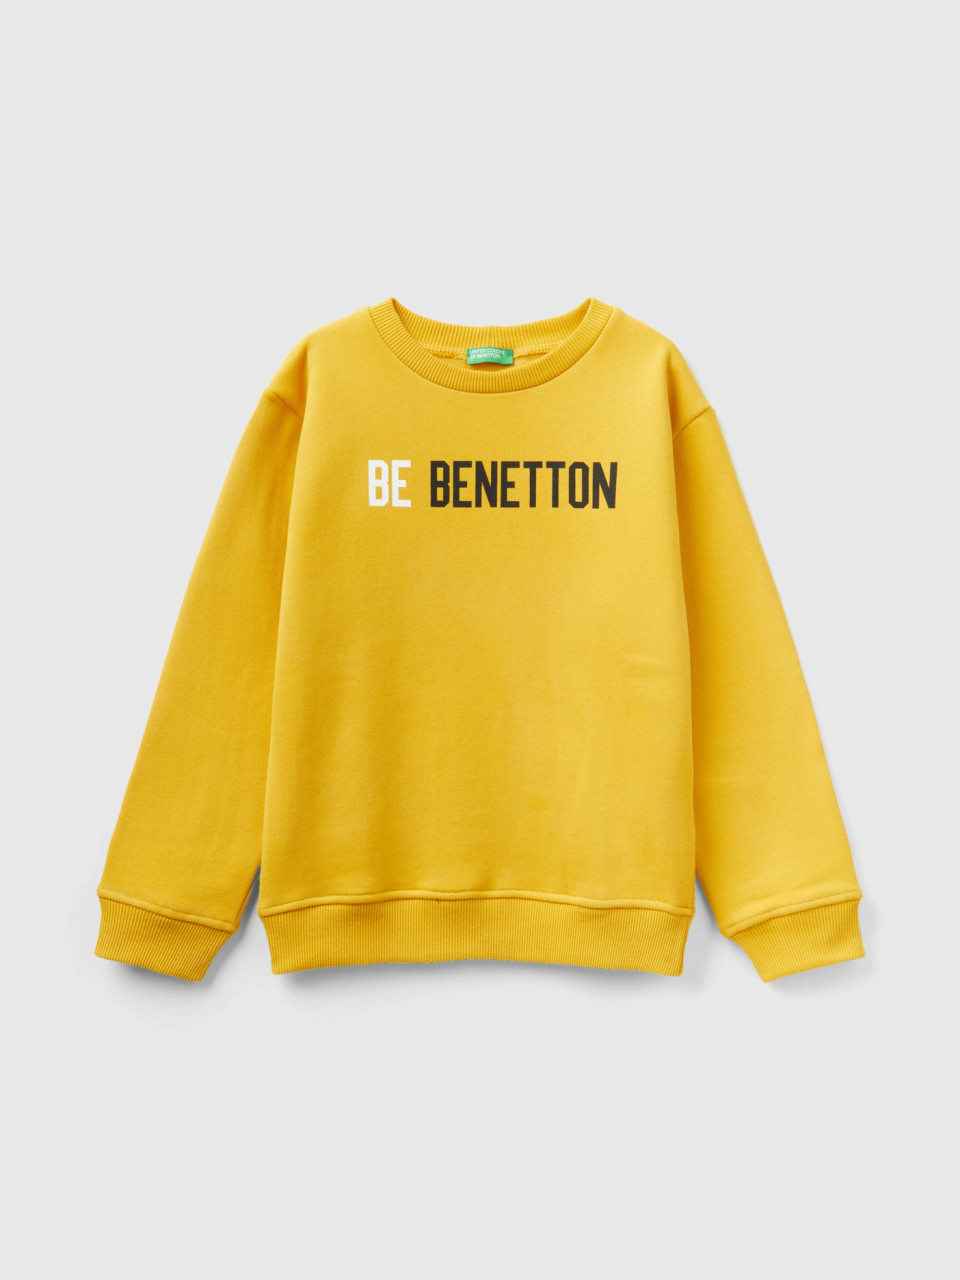 Benetton, Warm Sweatshirt With Logo, Yellow, Kids